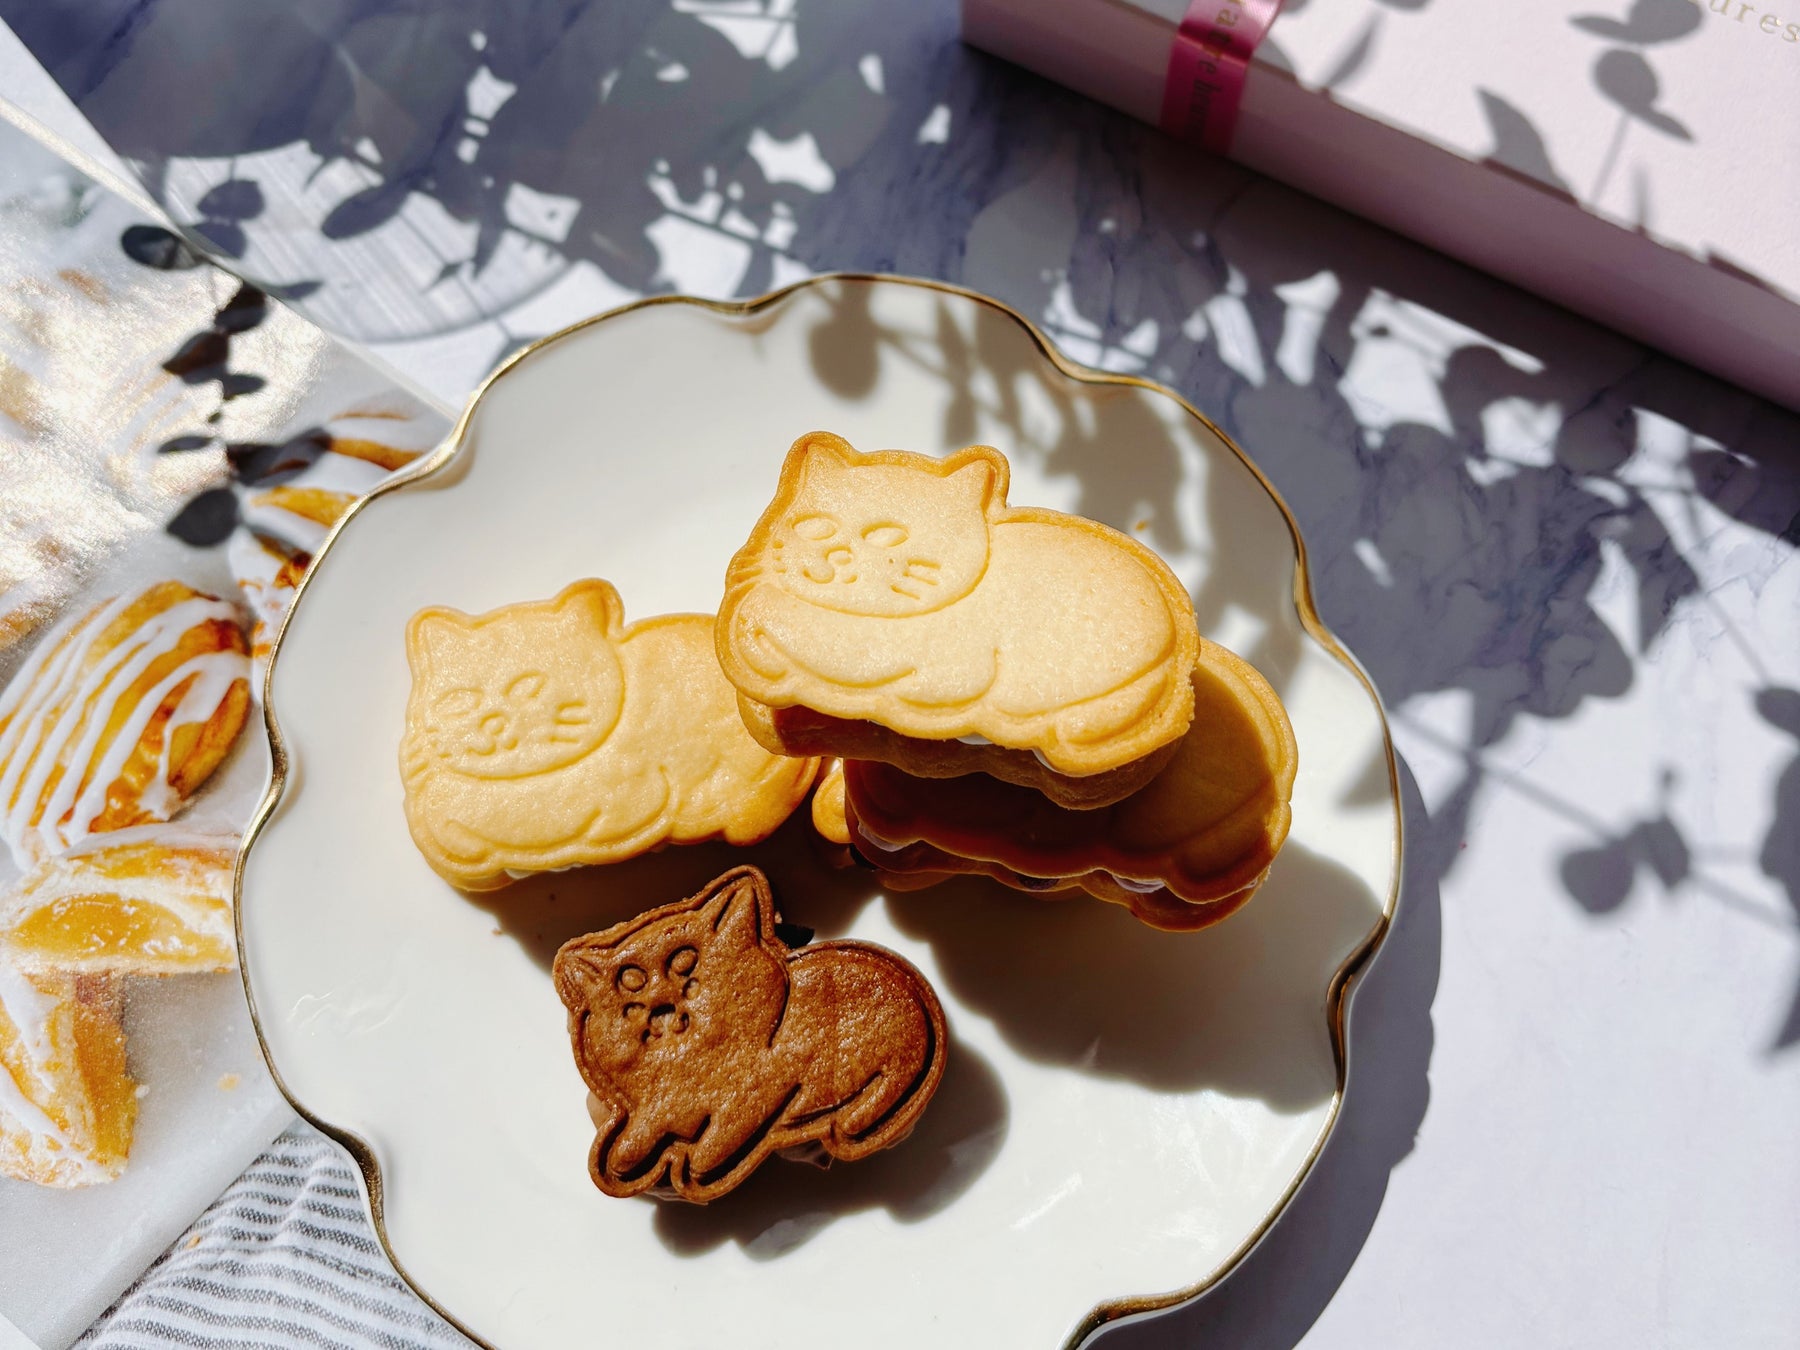 【犬猫モチーフの焼き菓子専門店quatre heures】かわいい犬猫クッキーのグルテンフリーバターサンドボックス全2種を新発売